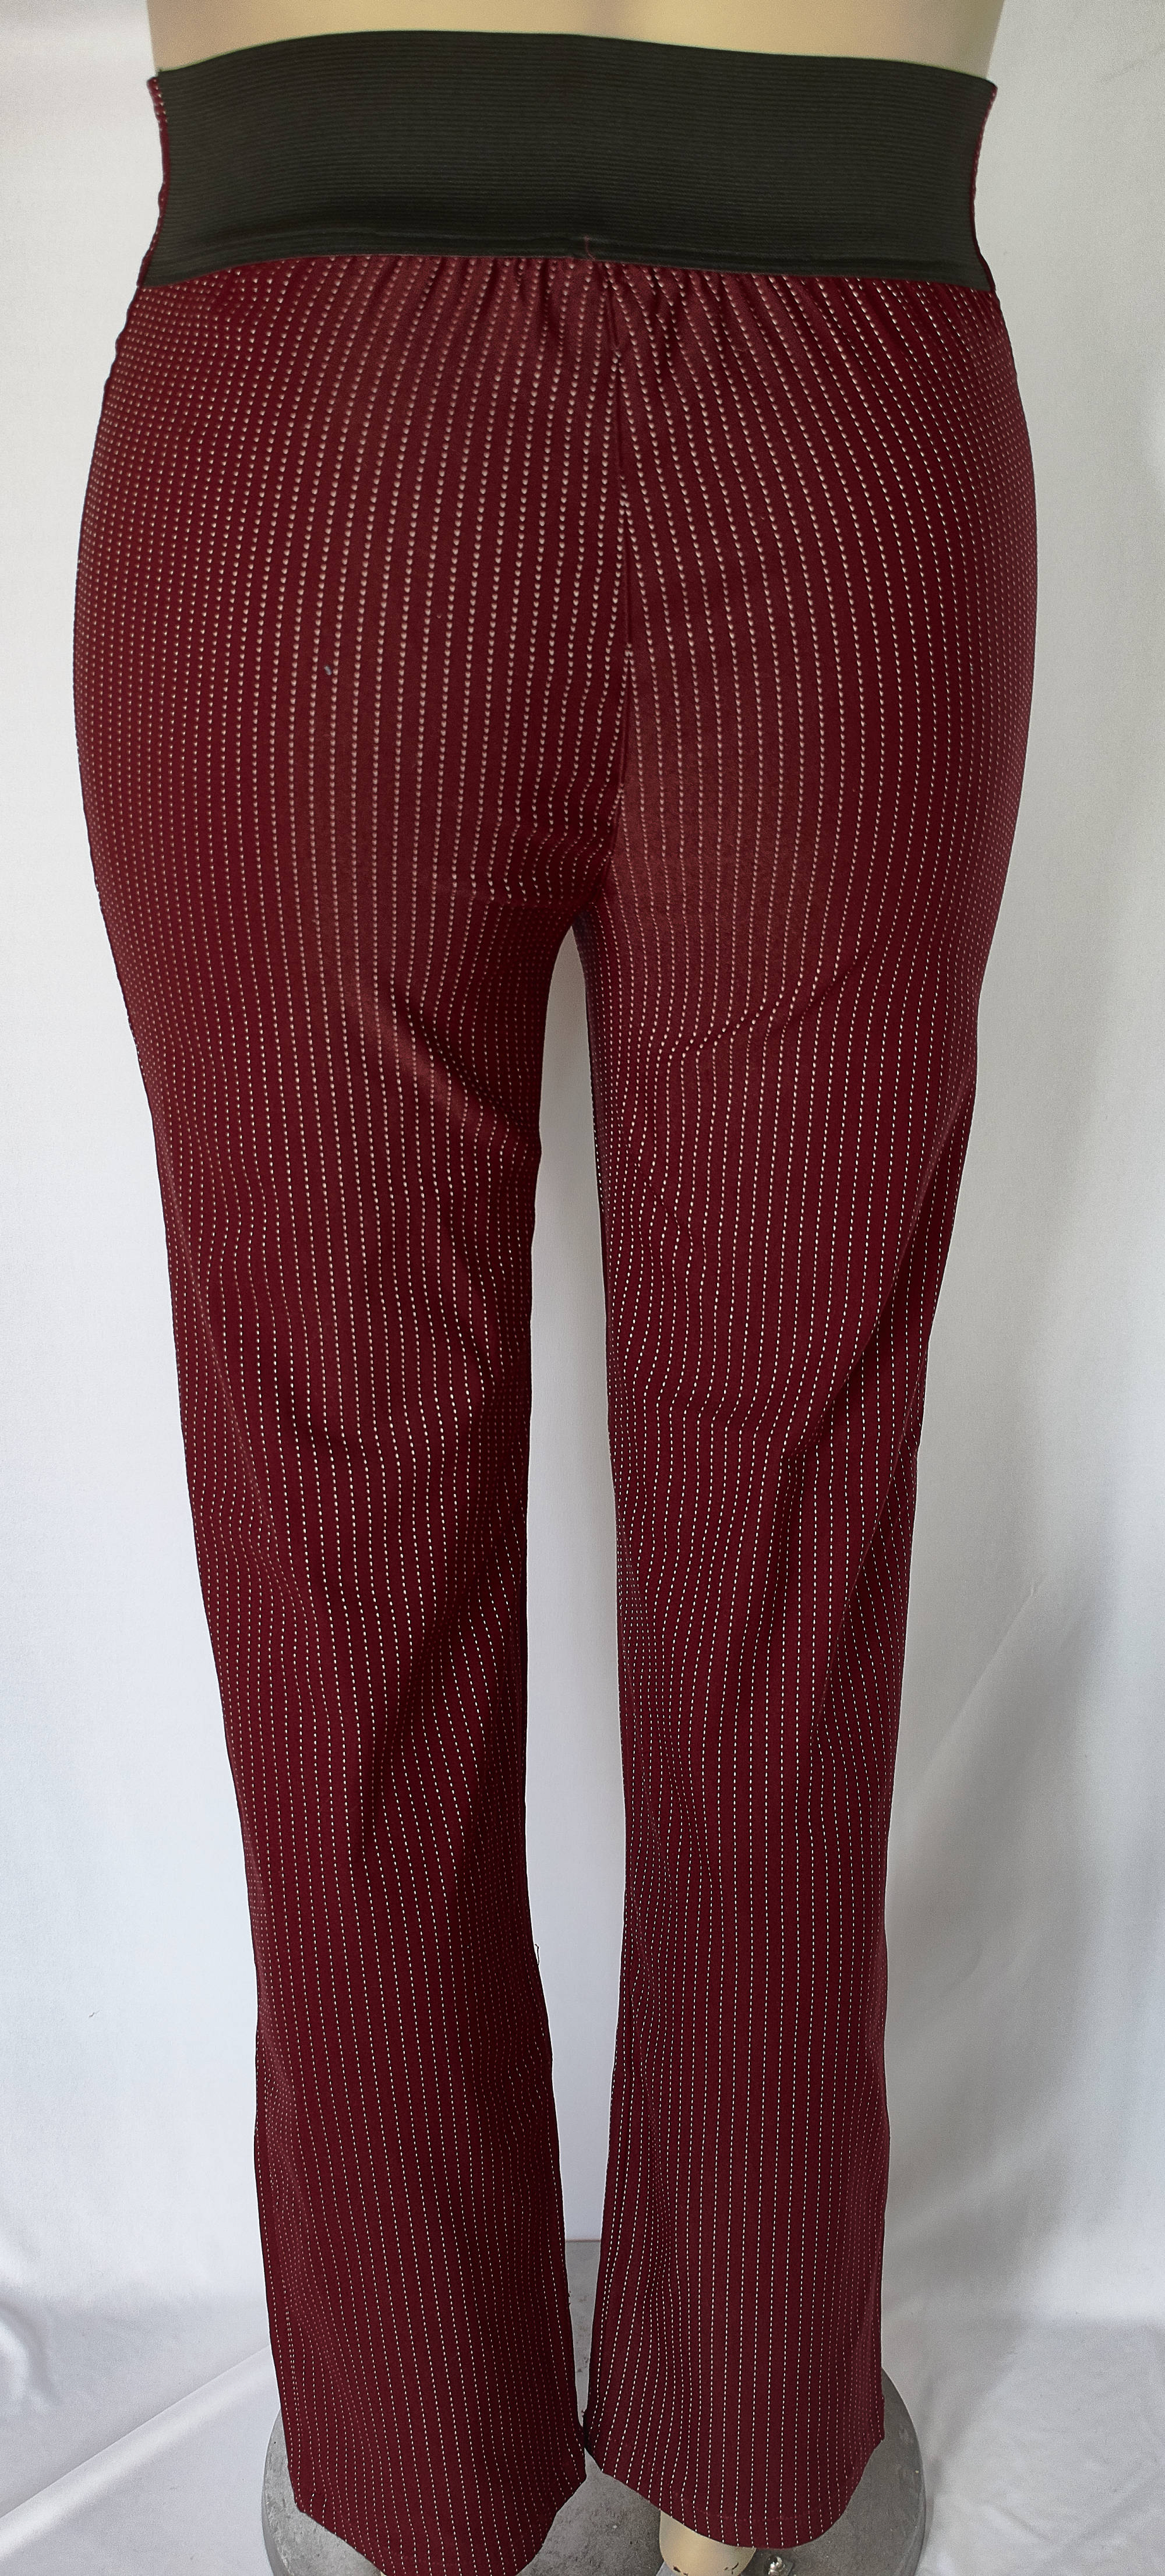 Pantalon tipo leggins color rojo Tallas 16 a la 22 de JoPlus Tallas Grandes